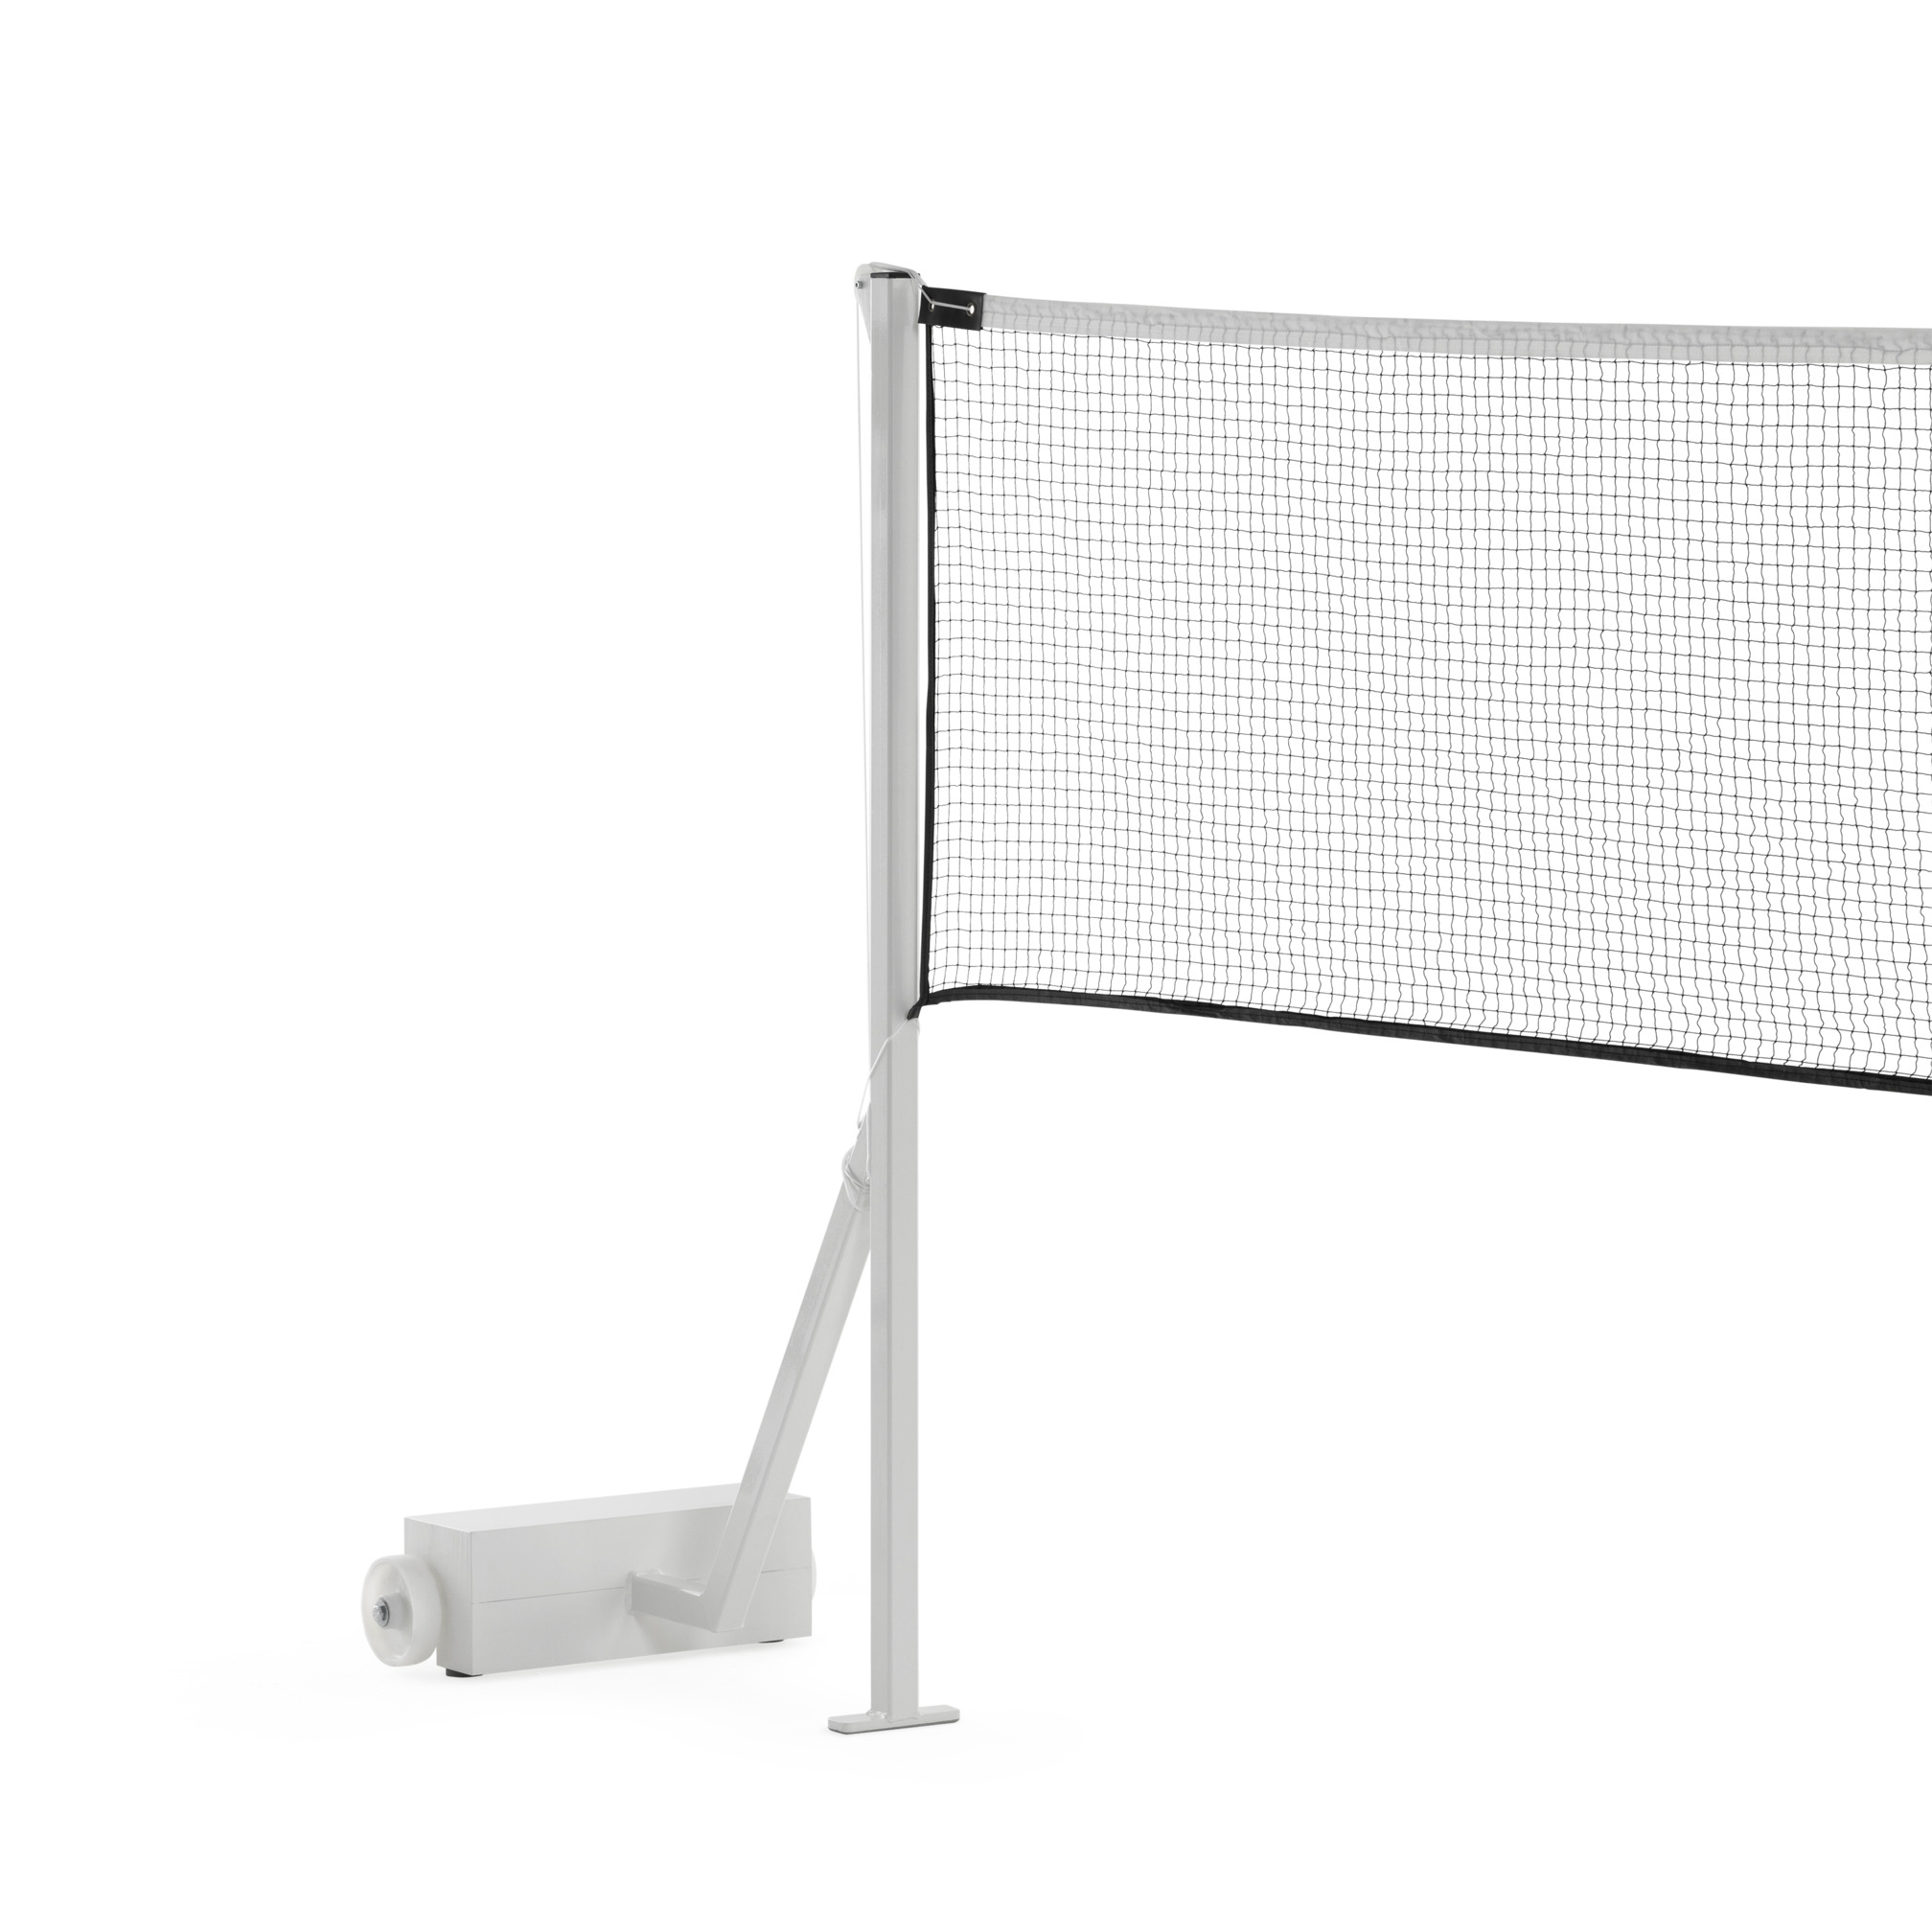 ERHARD® Sport Badmintonnetz, 2-fach auf Seil (30 m)